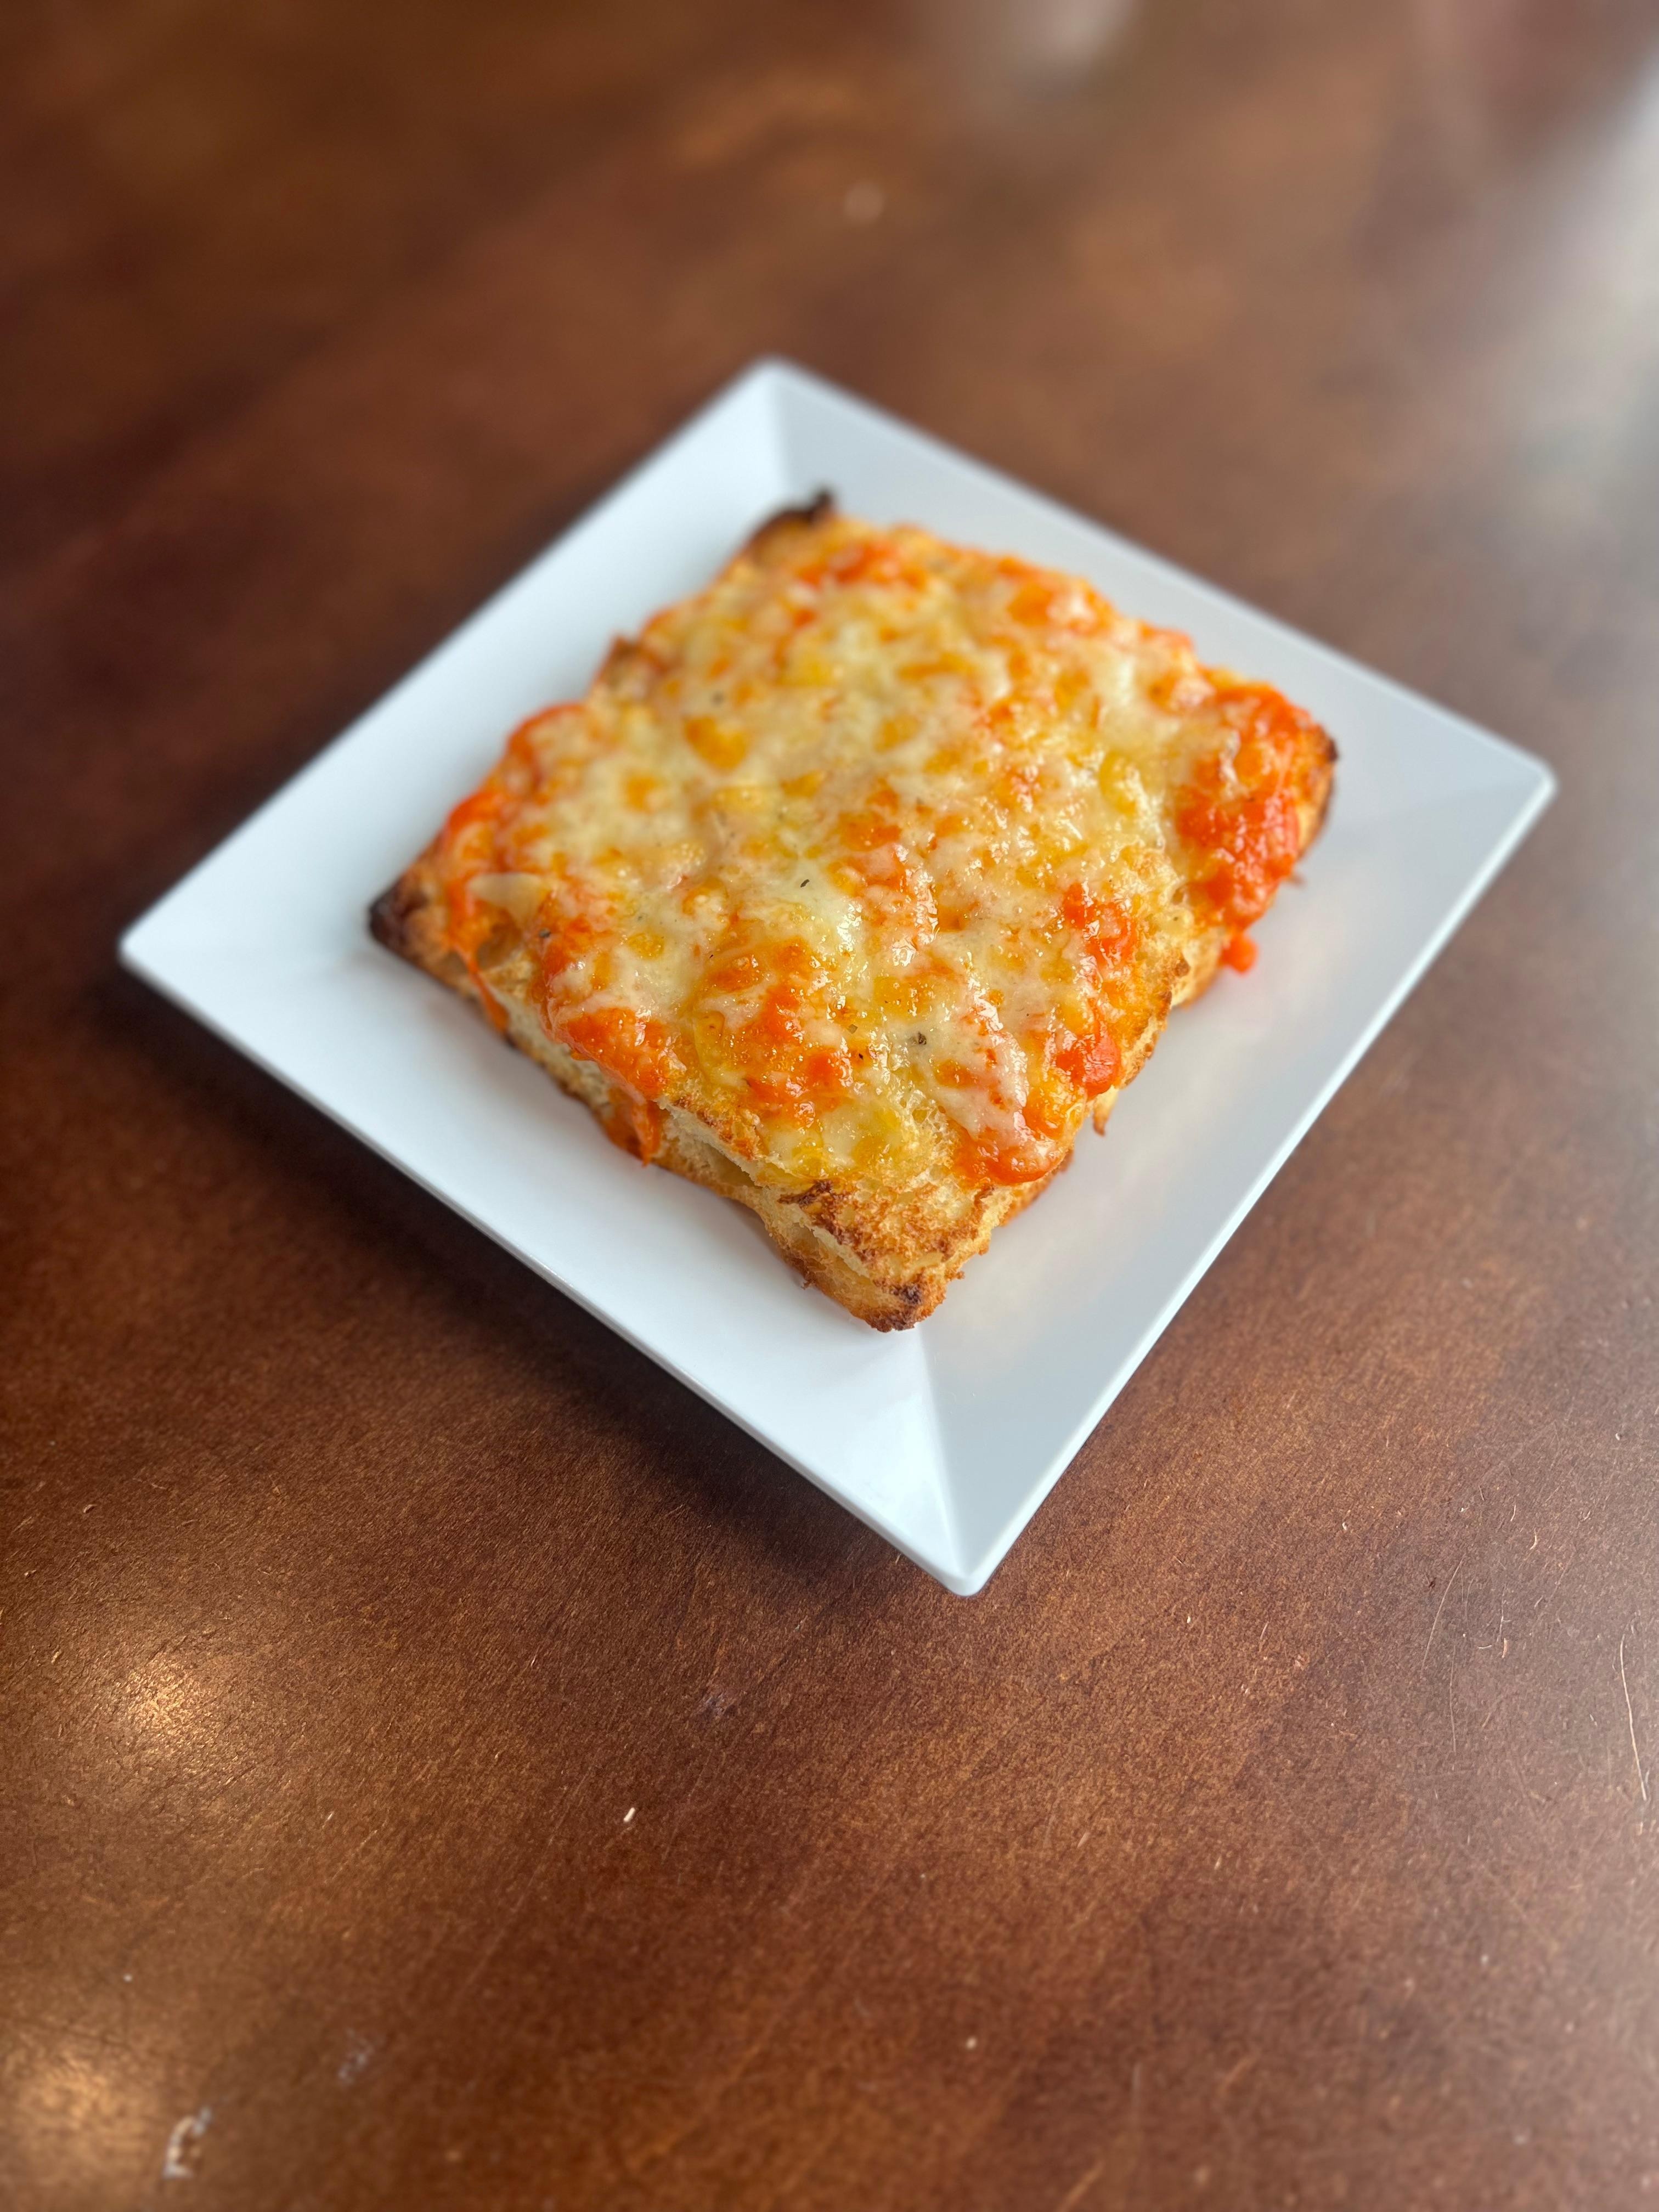 Cheesy "Pizza" Bread